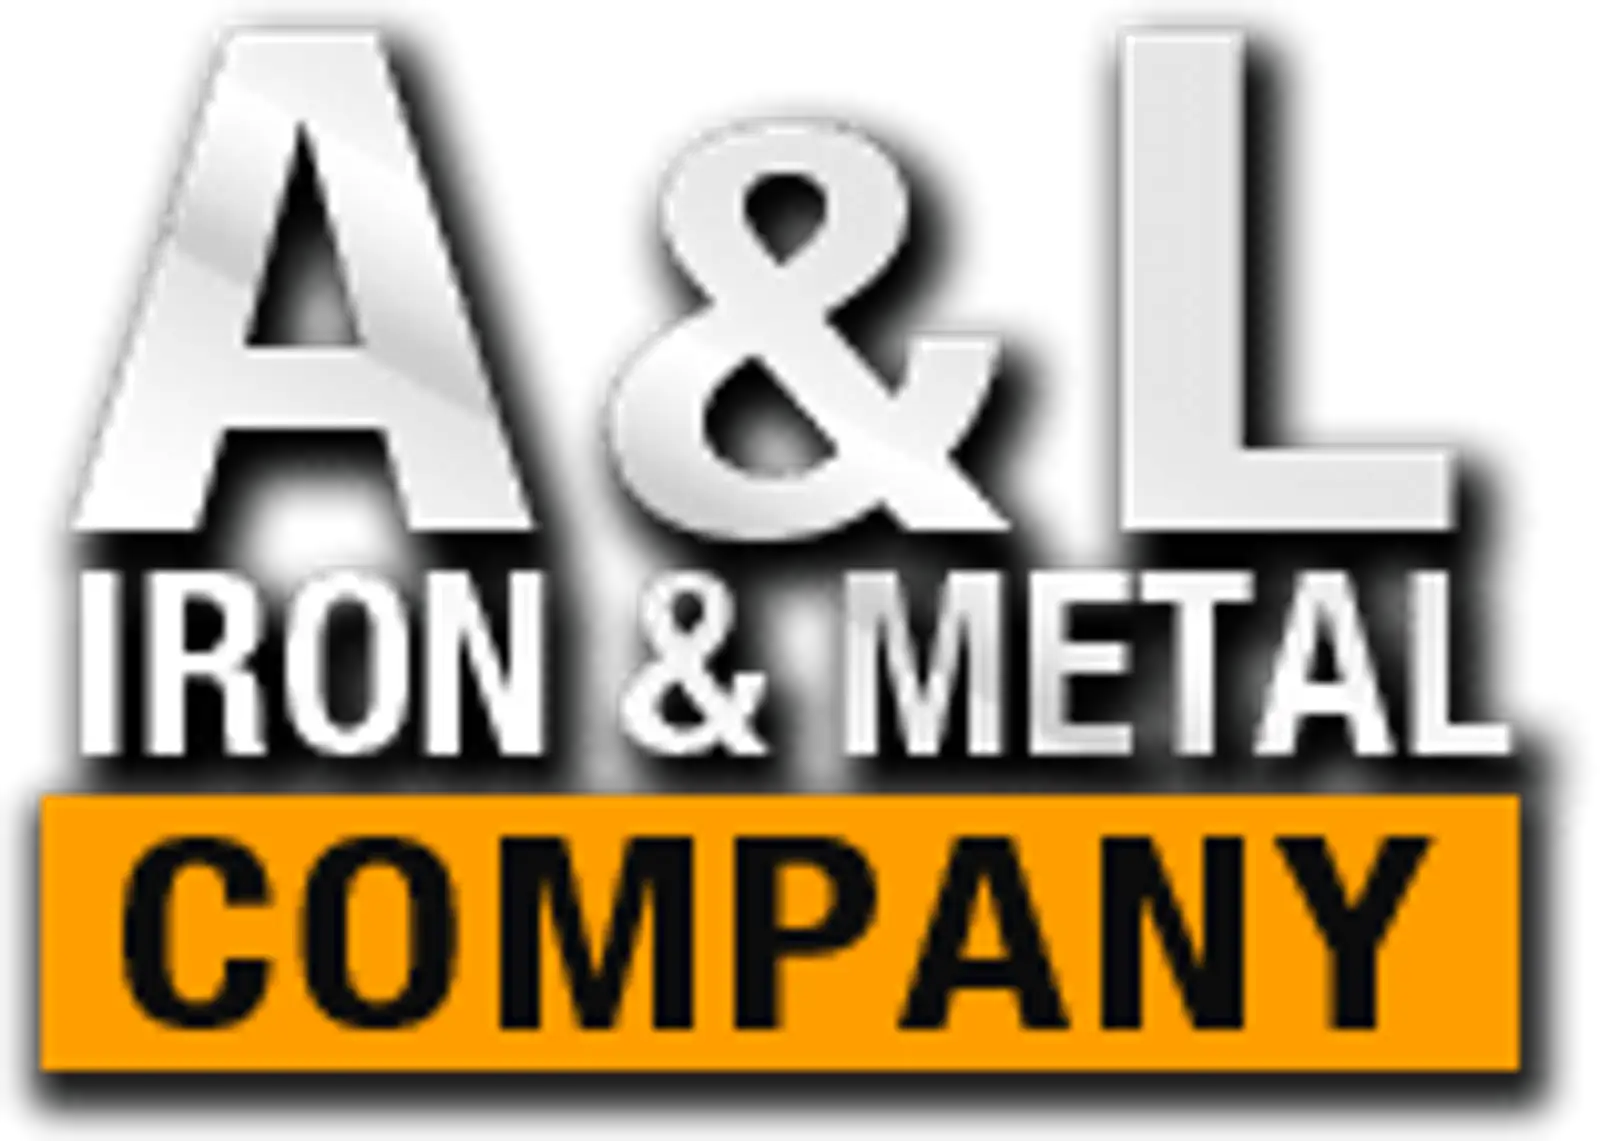 A & L logo